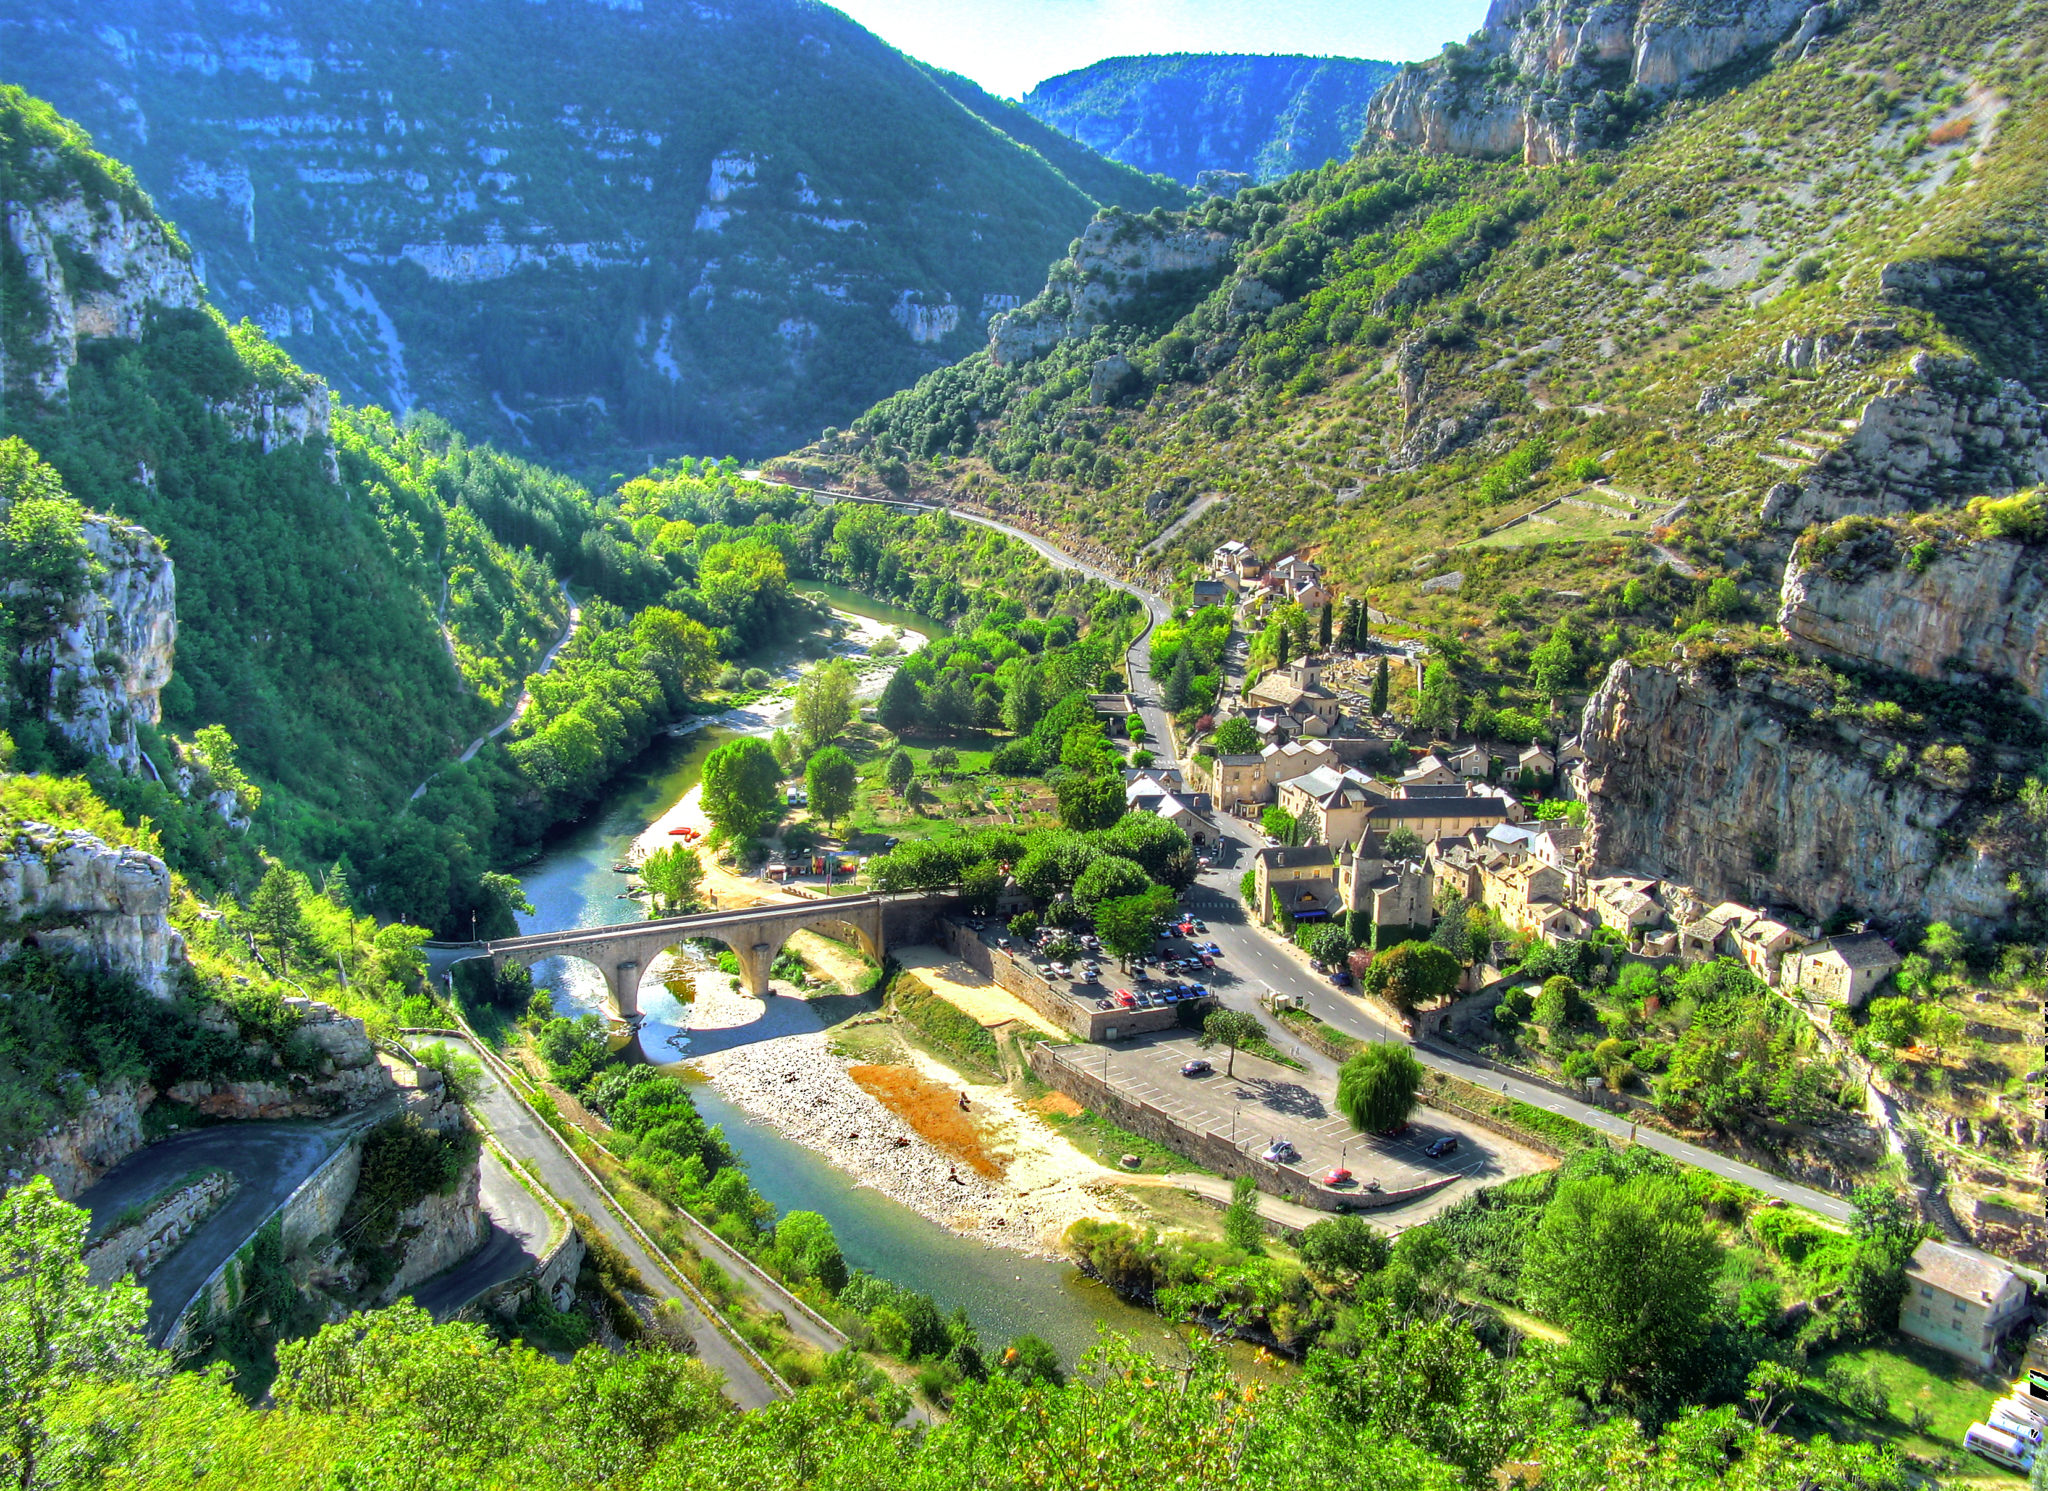 foto van de Gorges du Tarn. In het dal stroomt een rivier die bijna droog ligt en aan de kant zijn parkeerplaatsen en een oud dorpje